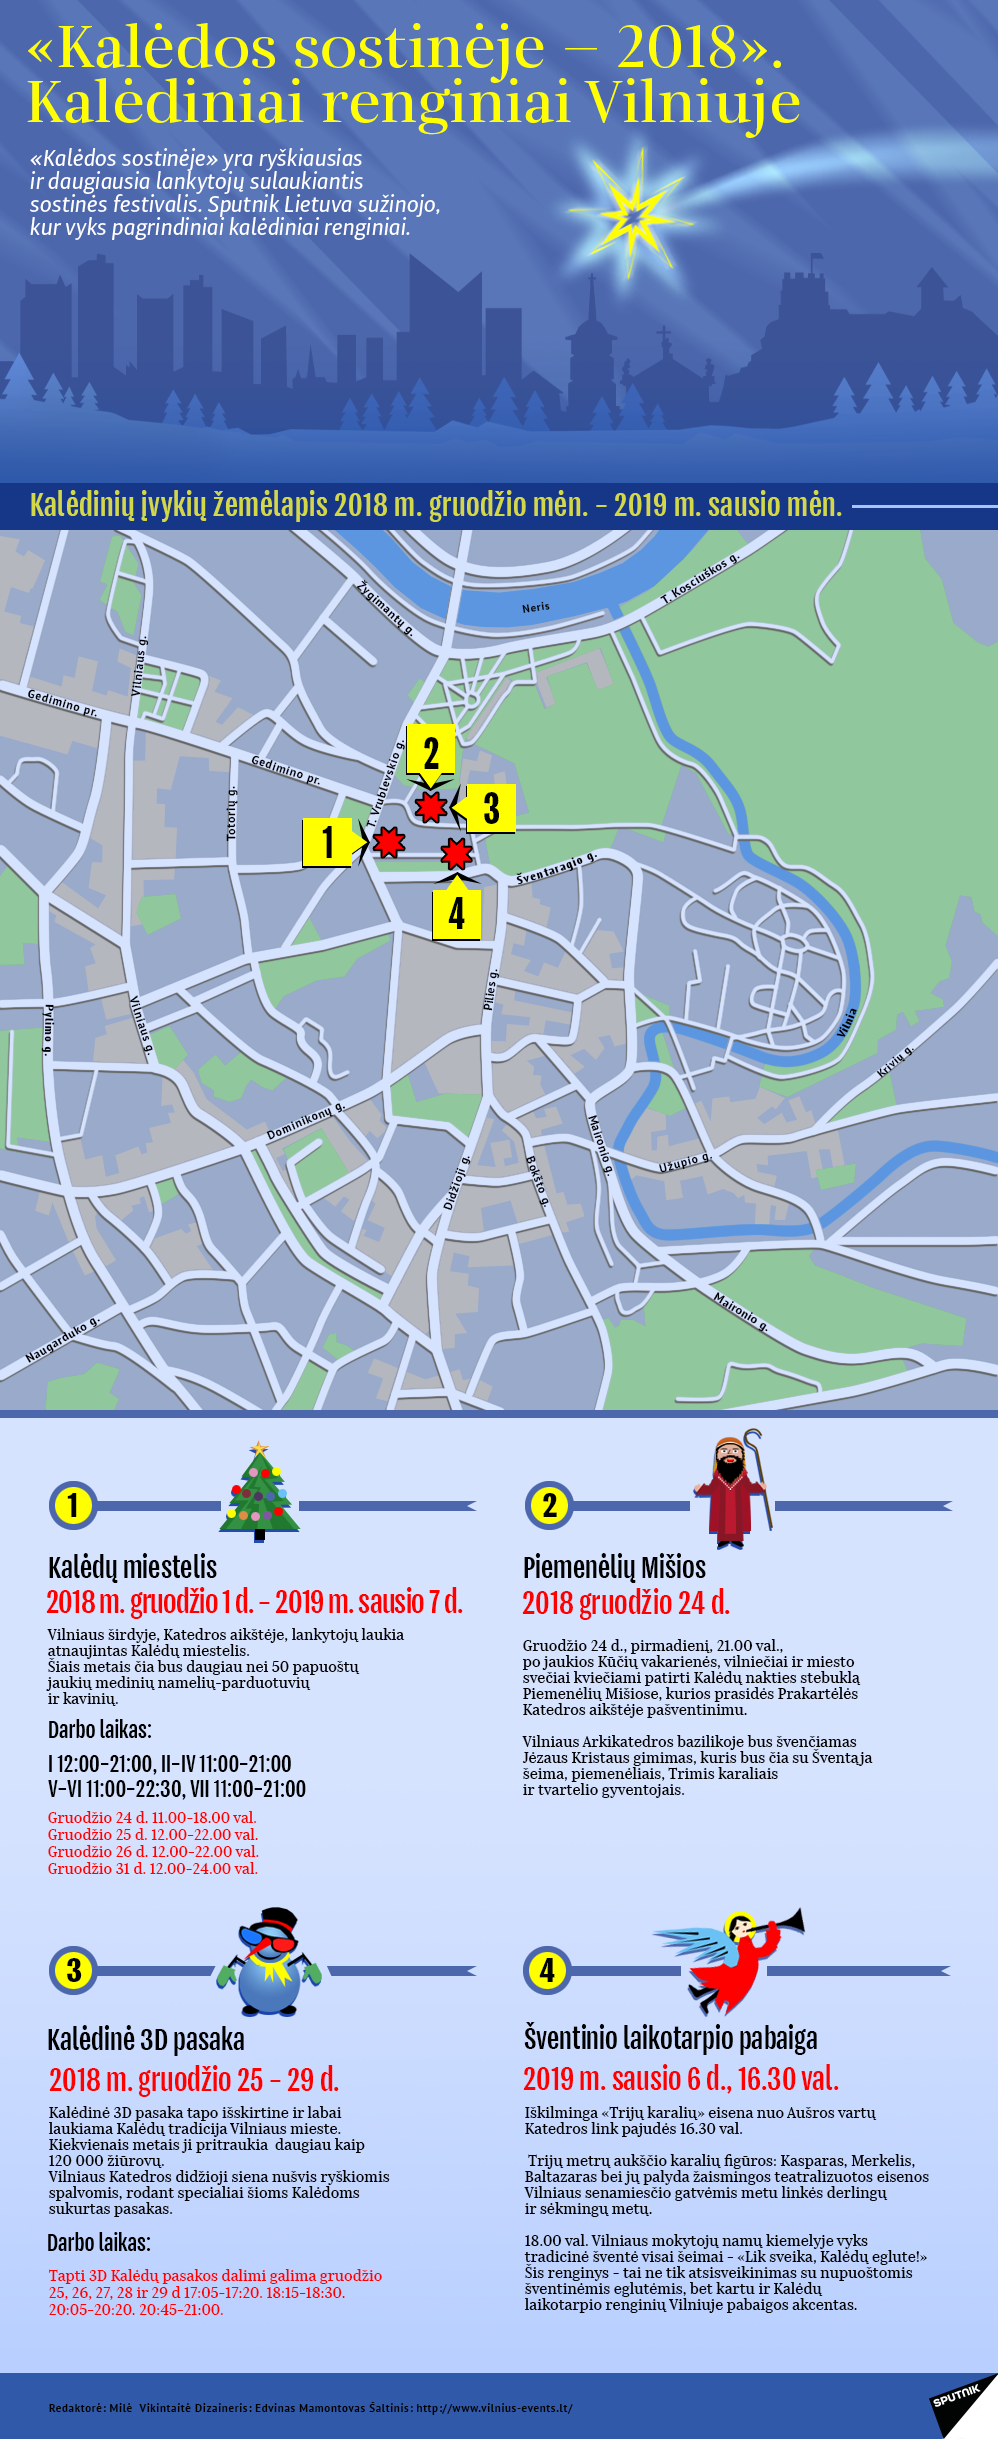 Kalėdos sostinėje — 2018.  Kalėdiniai renginiai Vilniuje - Sputnik Lietuva